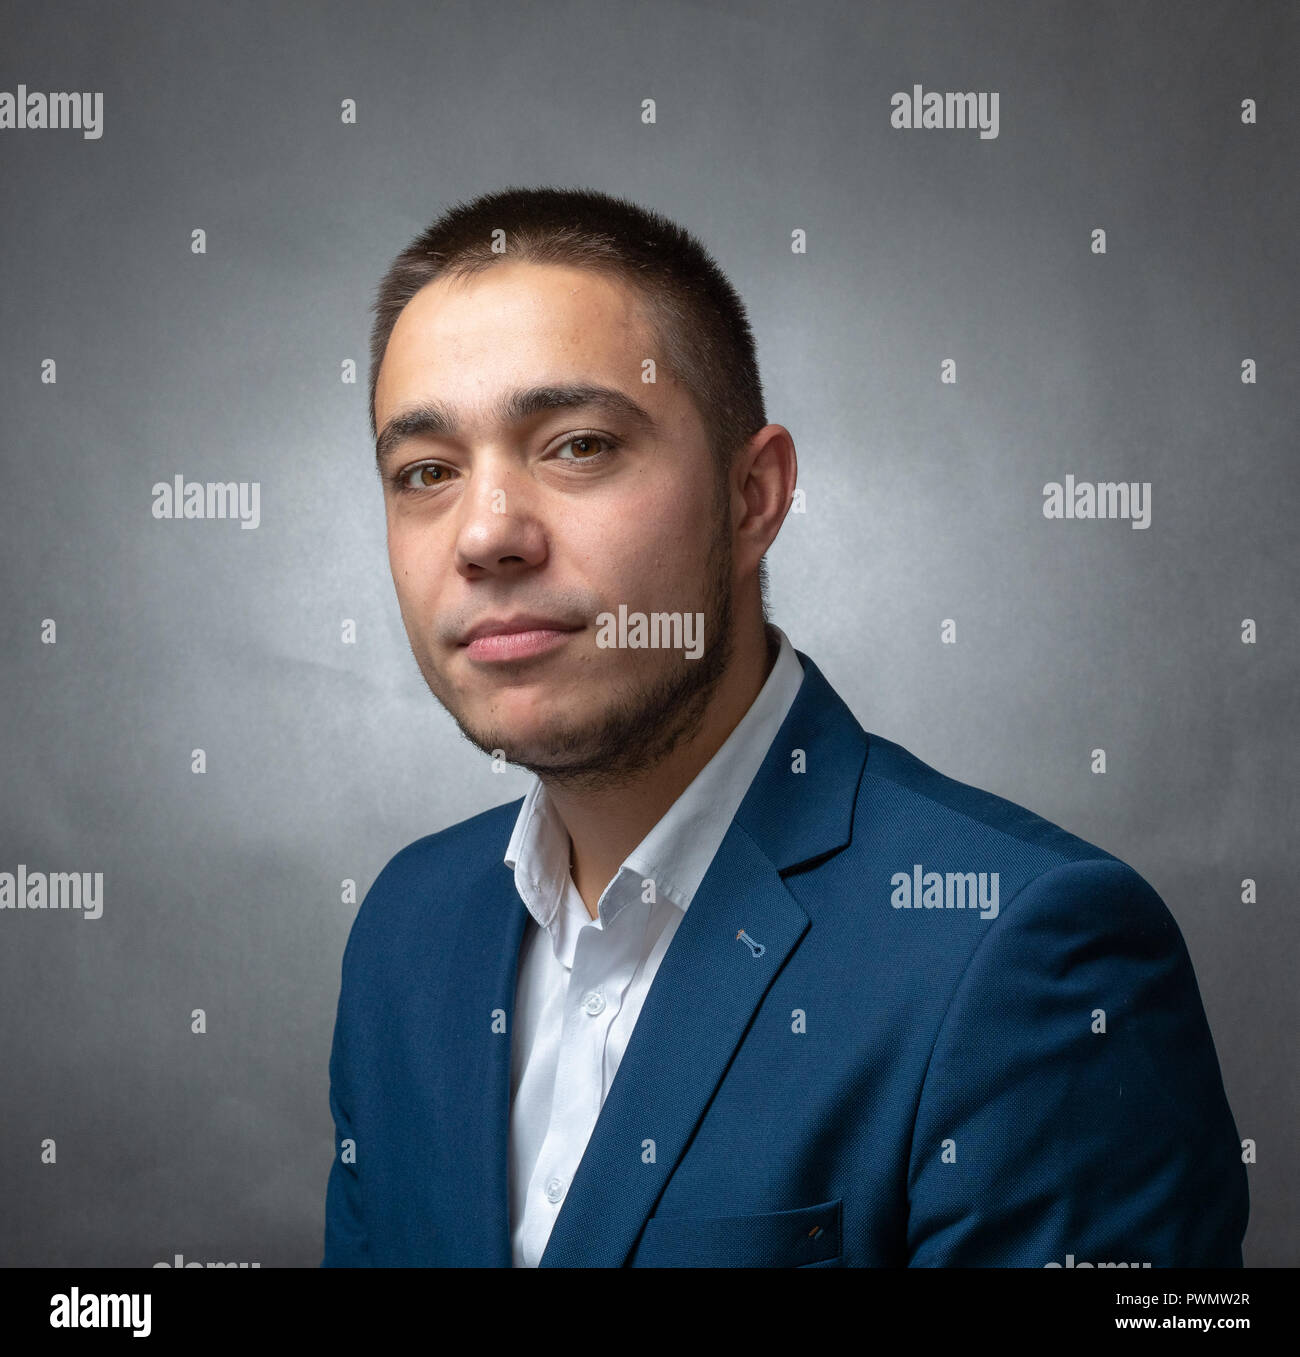 Bel successo imprenditore in tuta blu seduto e mostrando espressioni Foto Stock